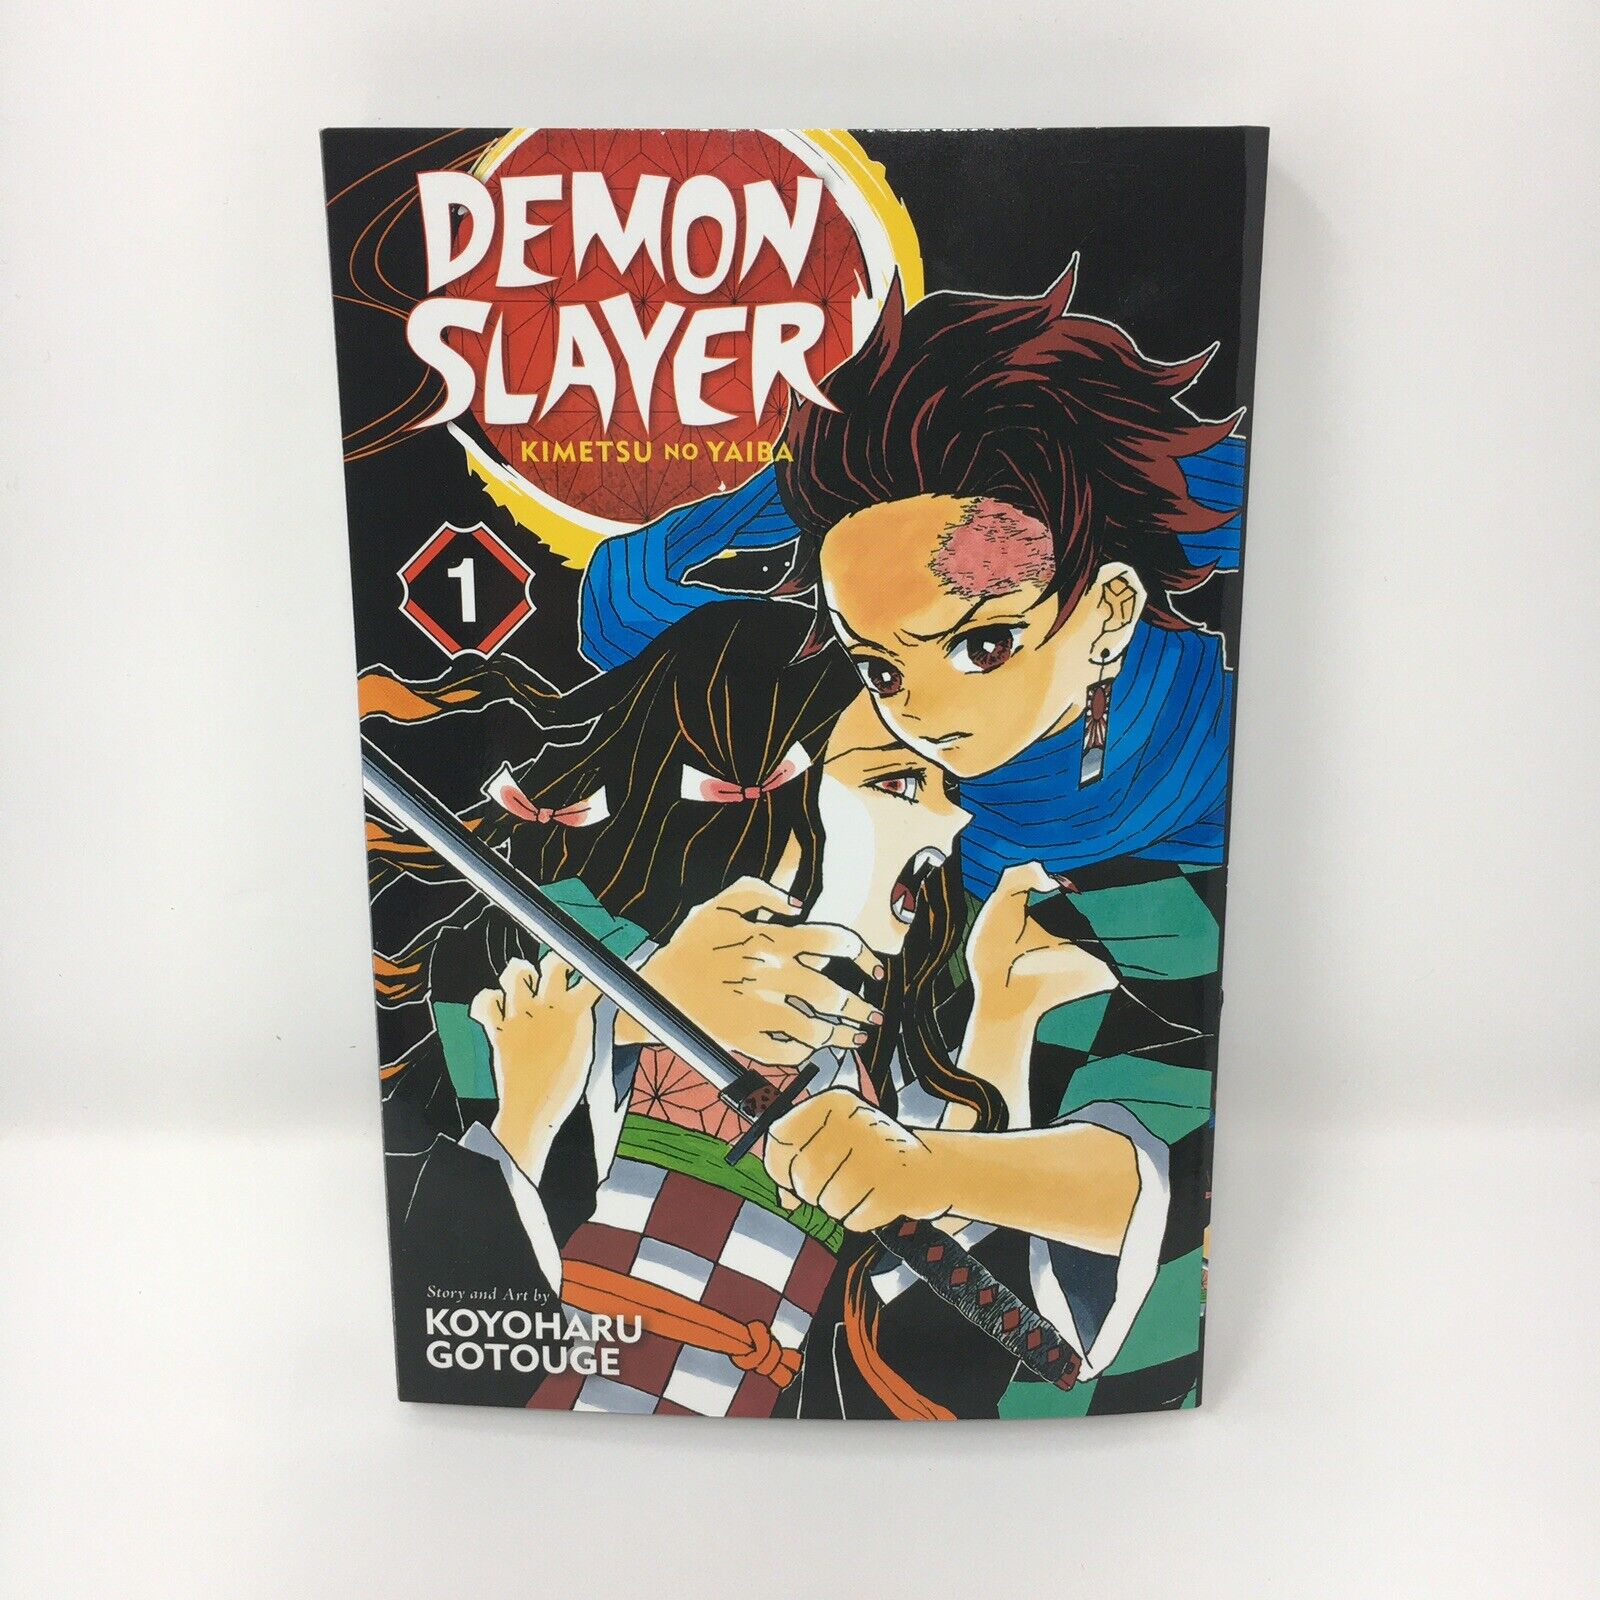 Demon Slayer Kimetsu no Yaiba Vol. 1 English Manga By Koyoharu Gotouge Brand New